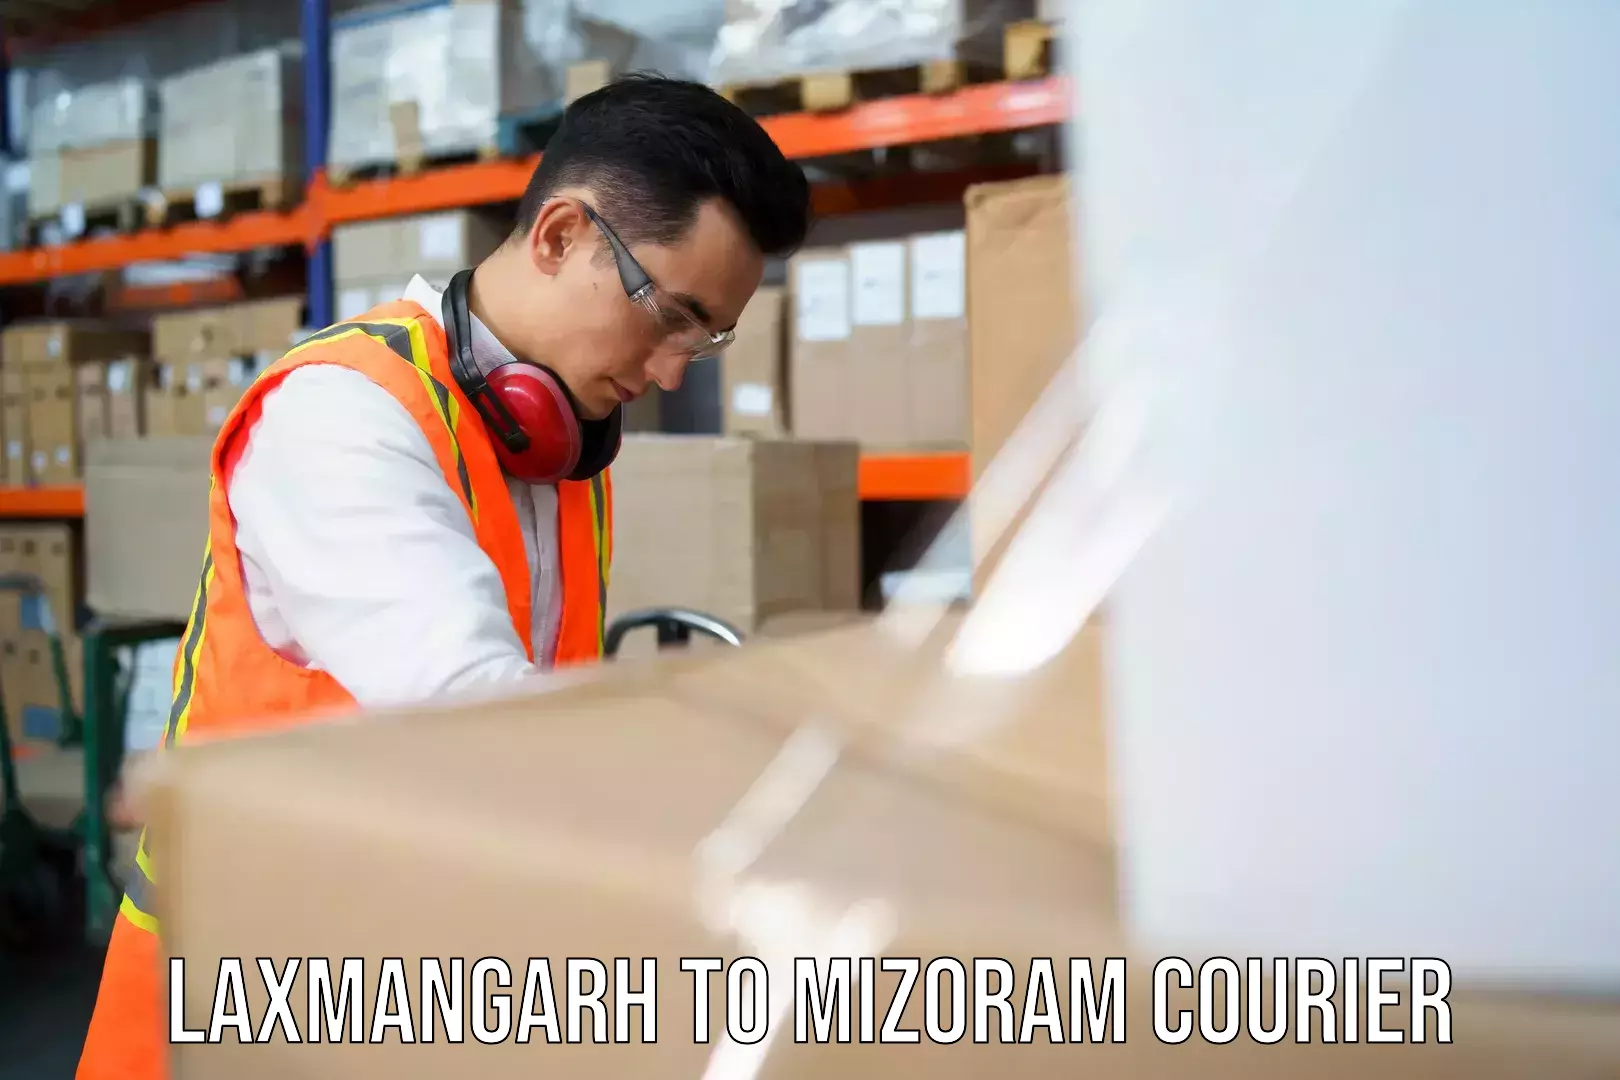 Customer-centric shipping Laxmangarh to Mizoram